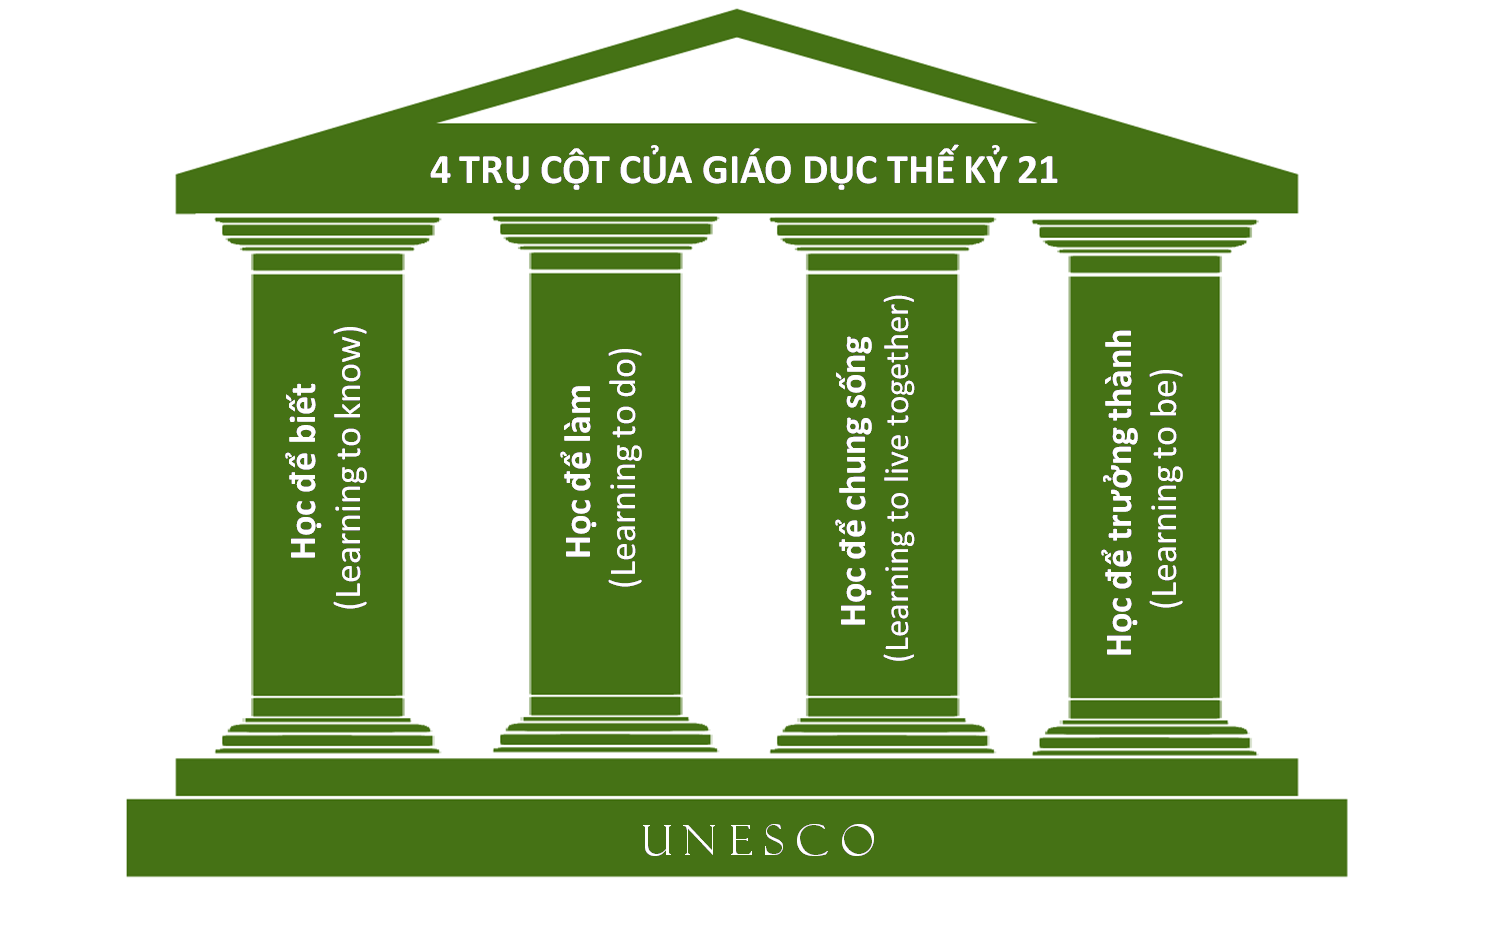 Bốn trụ cột học tập của UNESCO cho thế kỷ 21